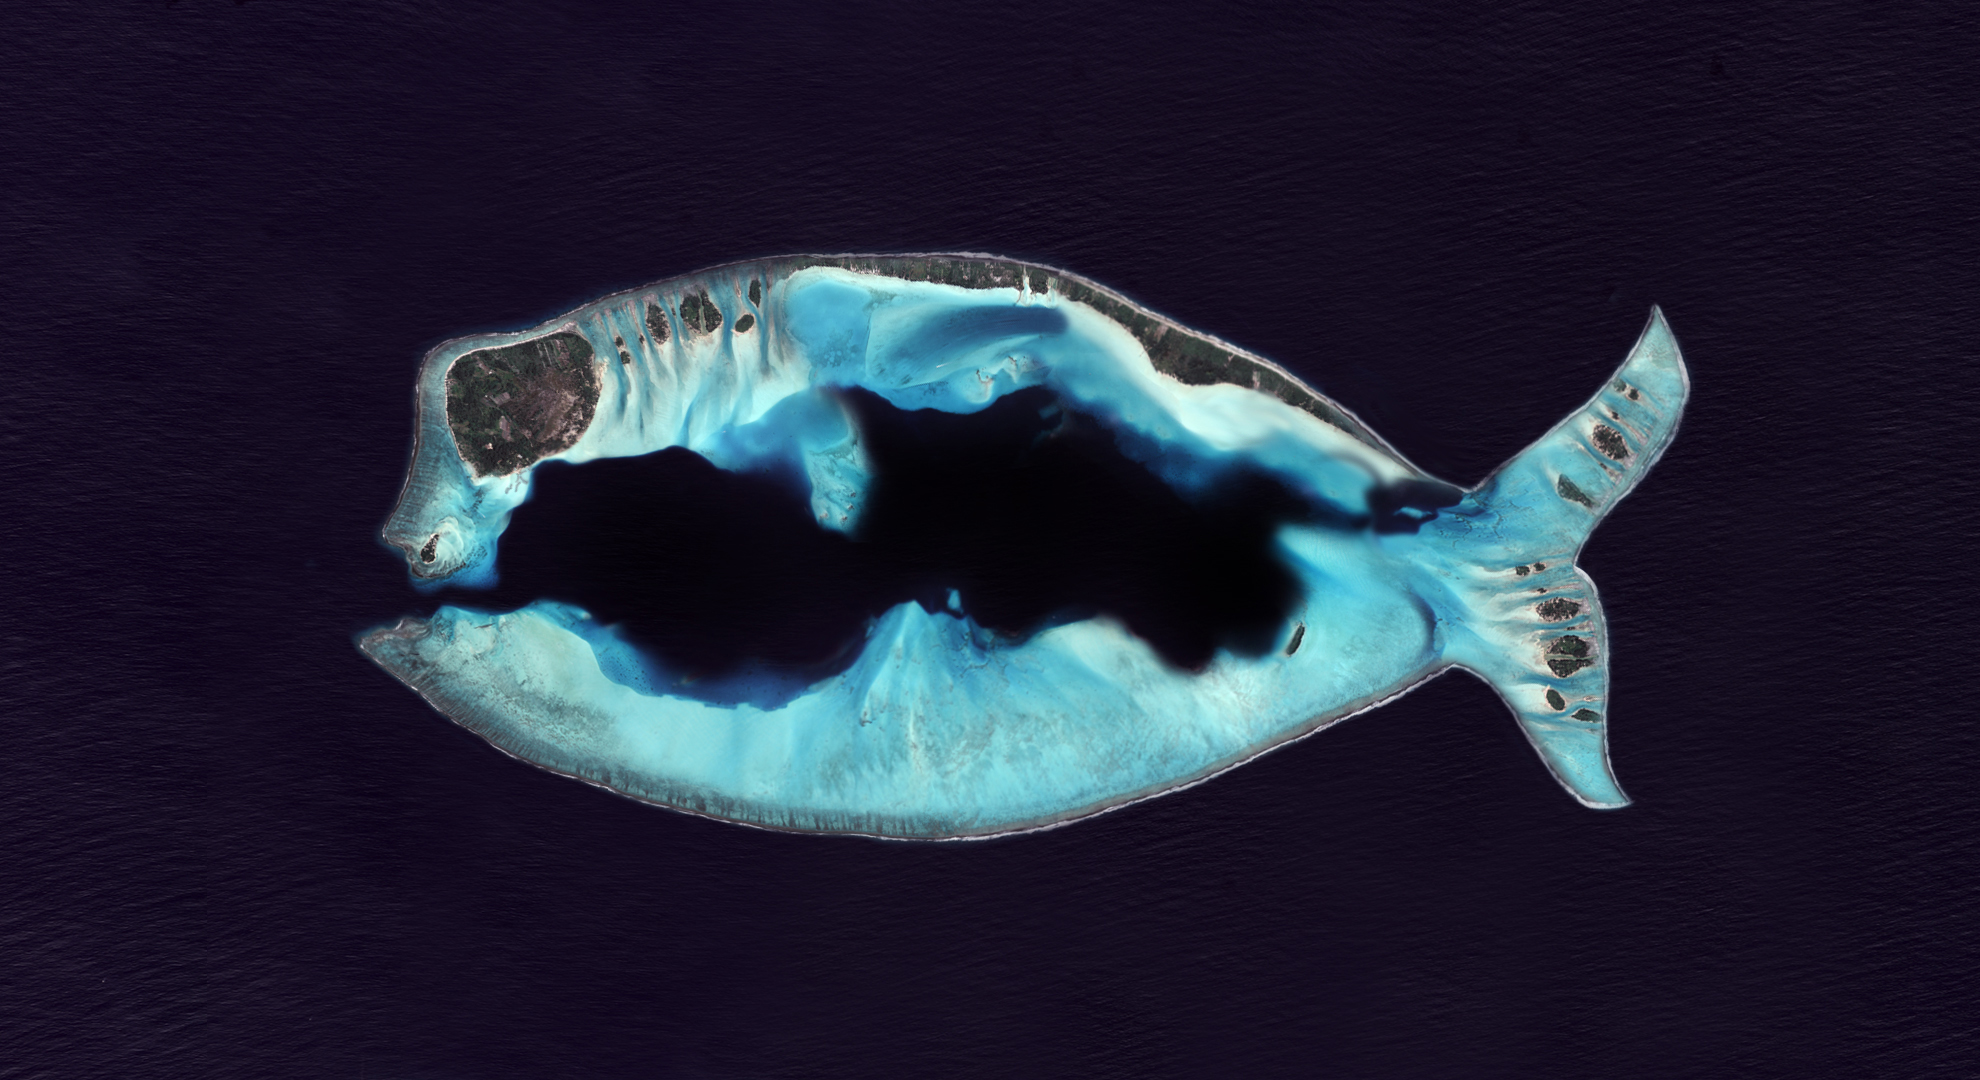 Premier avril - Poisson d'avril - April's fool - île mystérieuse - île en forme de poisson - CNES - Un autre regard sur la Terre